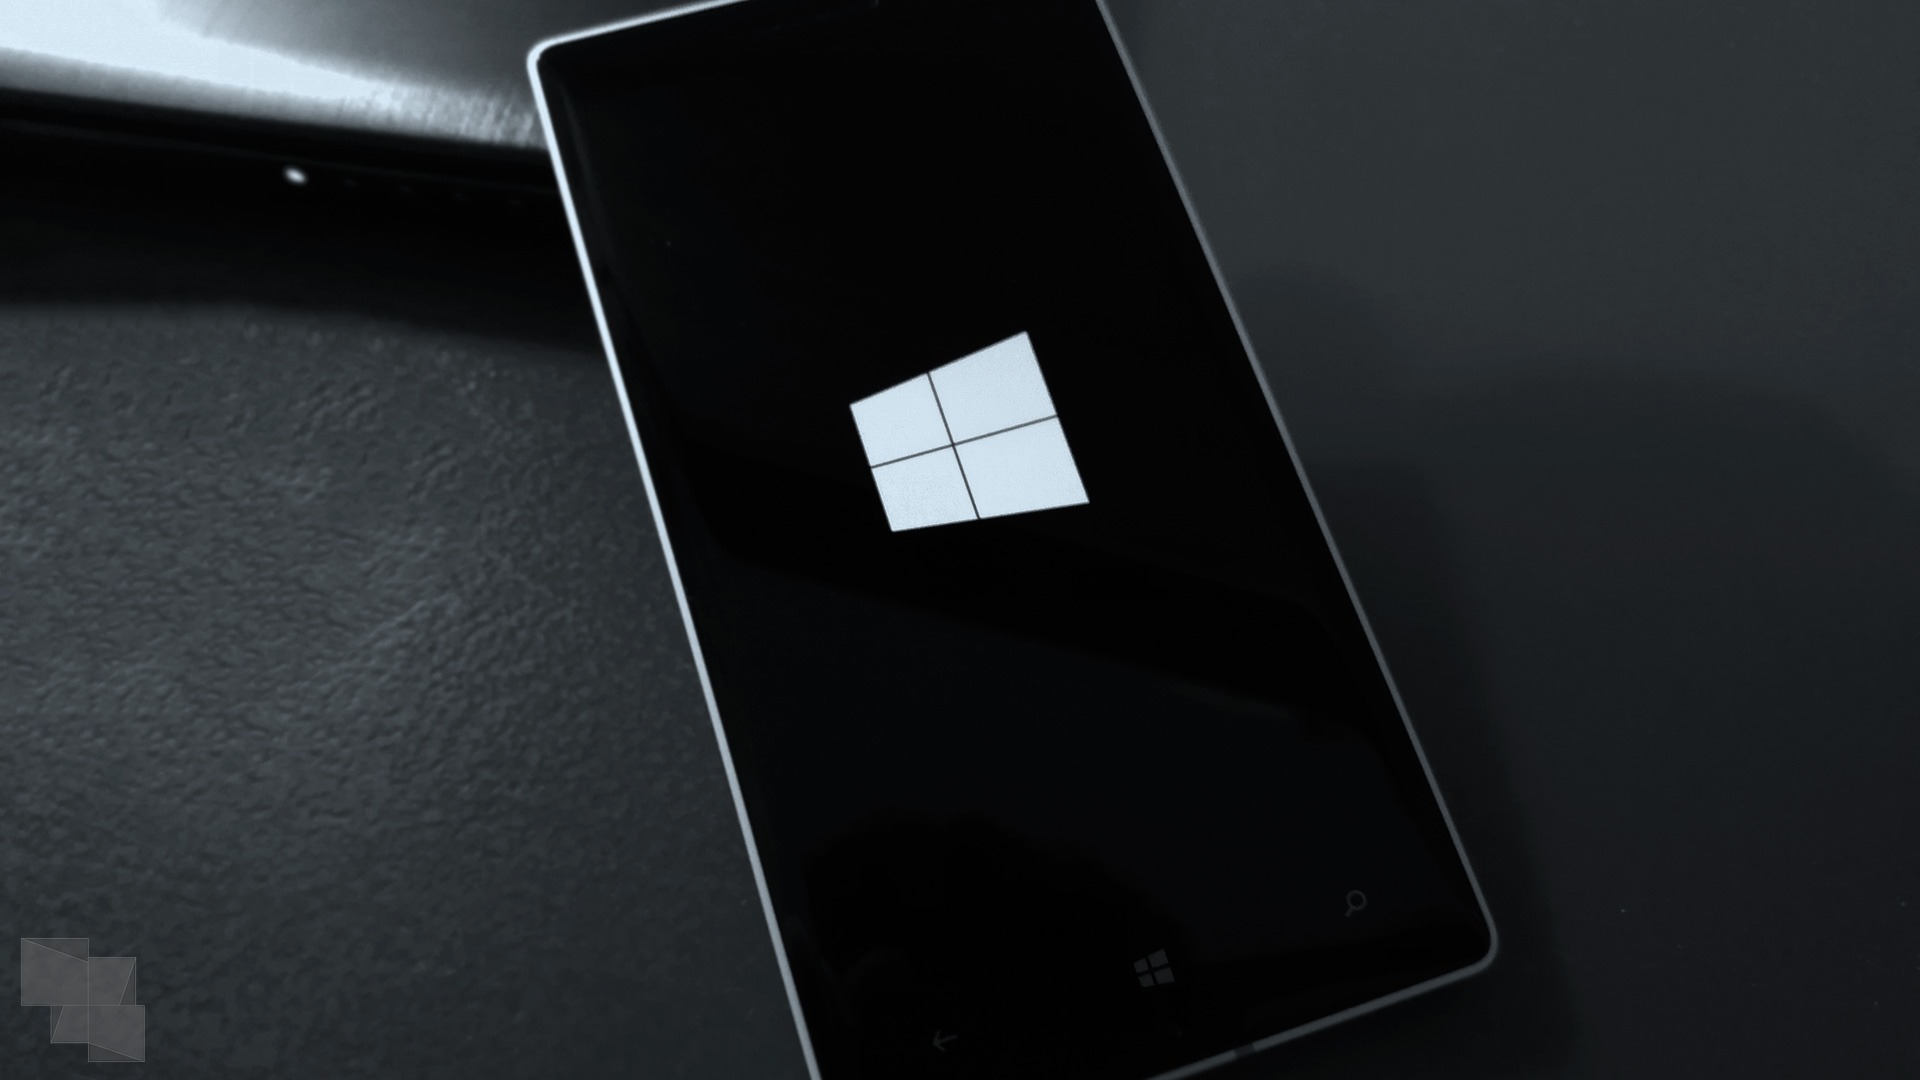 Brandon LeBlanc confirma que no hay en camino Builds Insider para Windows 10 Mobile